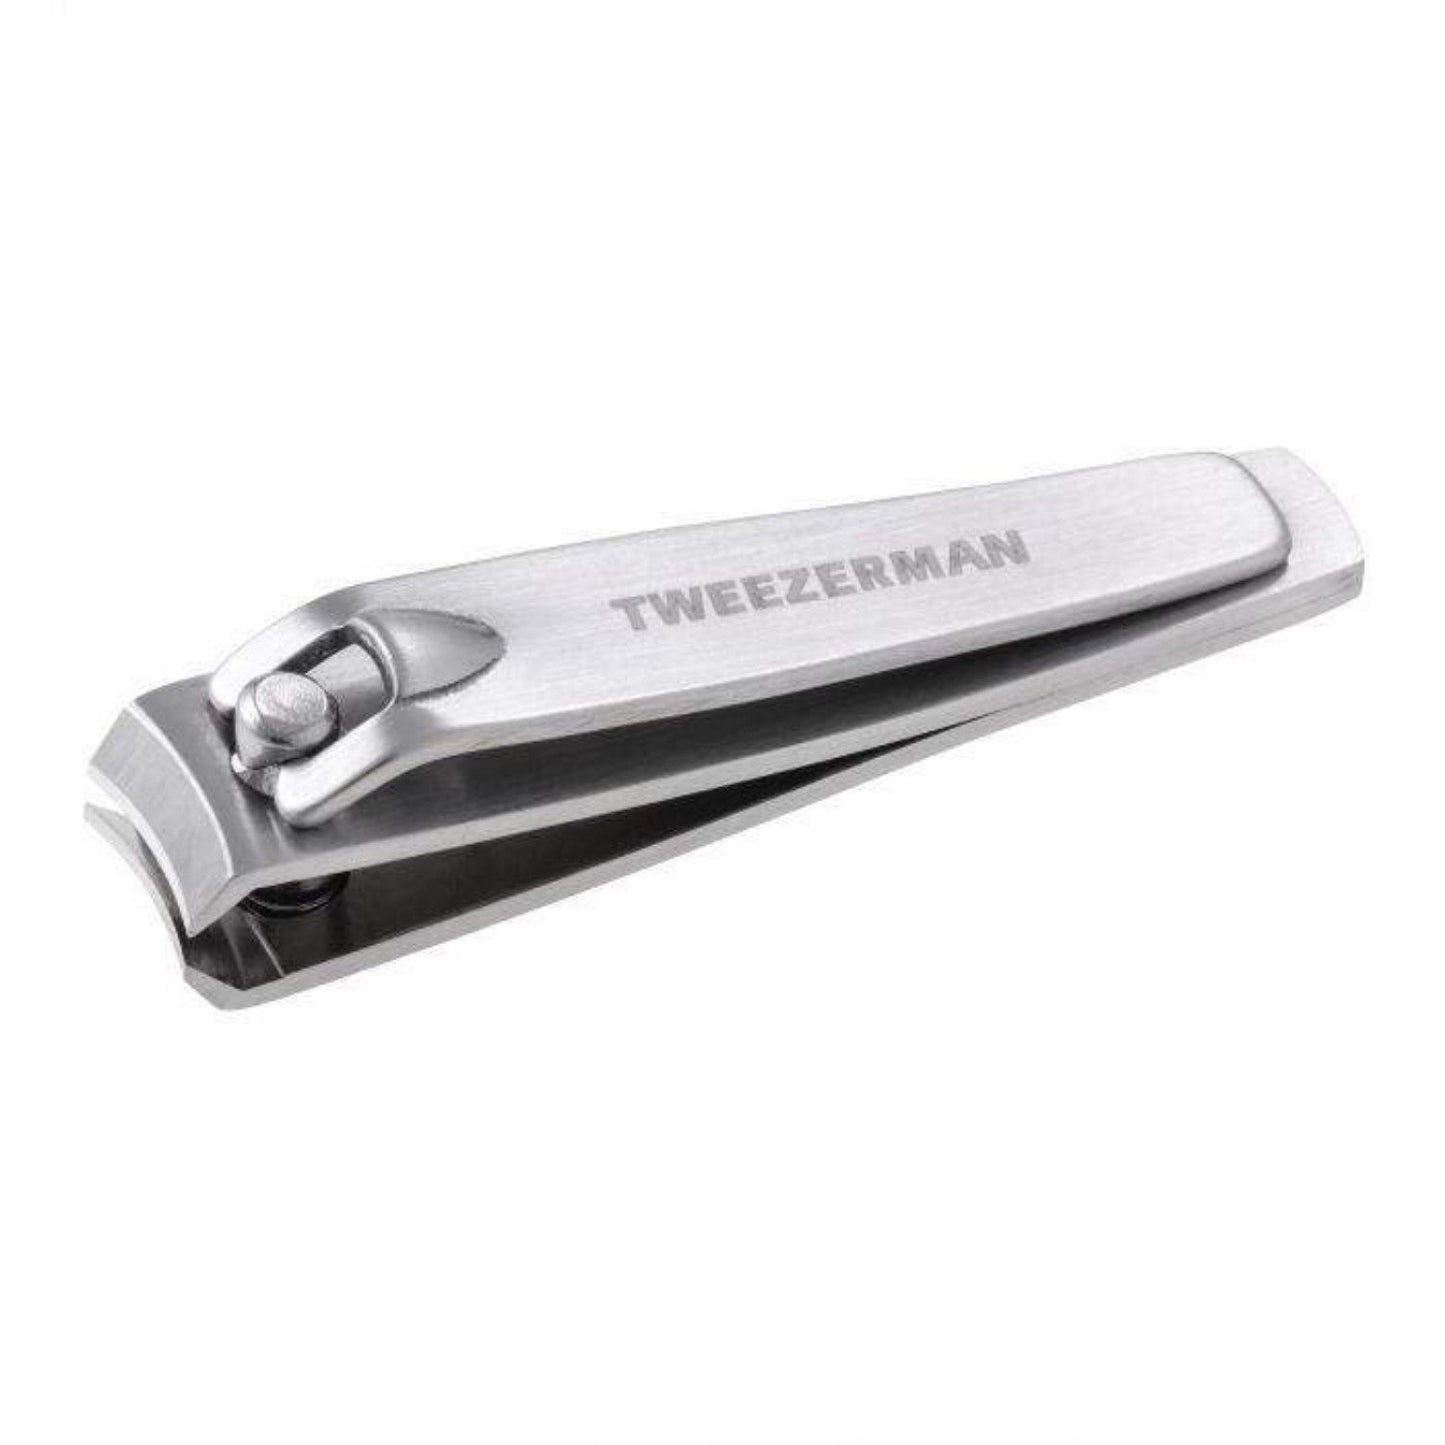 Tweezerman Stainless Steel Fingernail Clipper (SHOP)